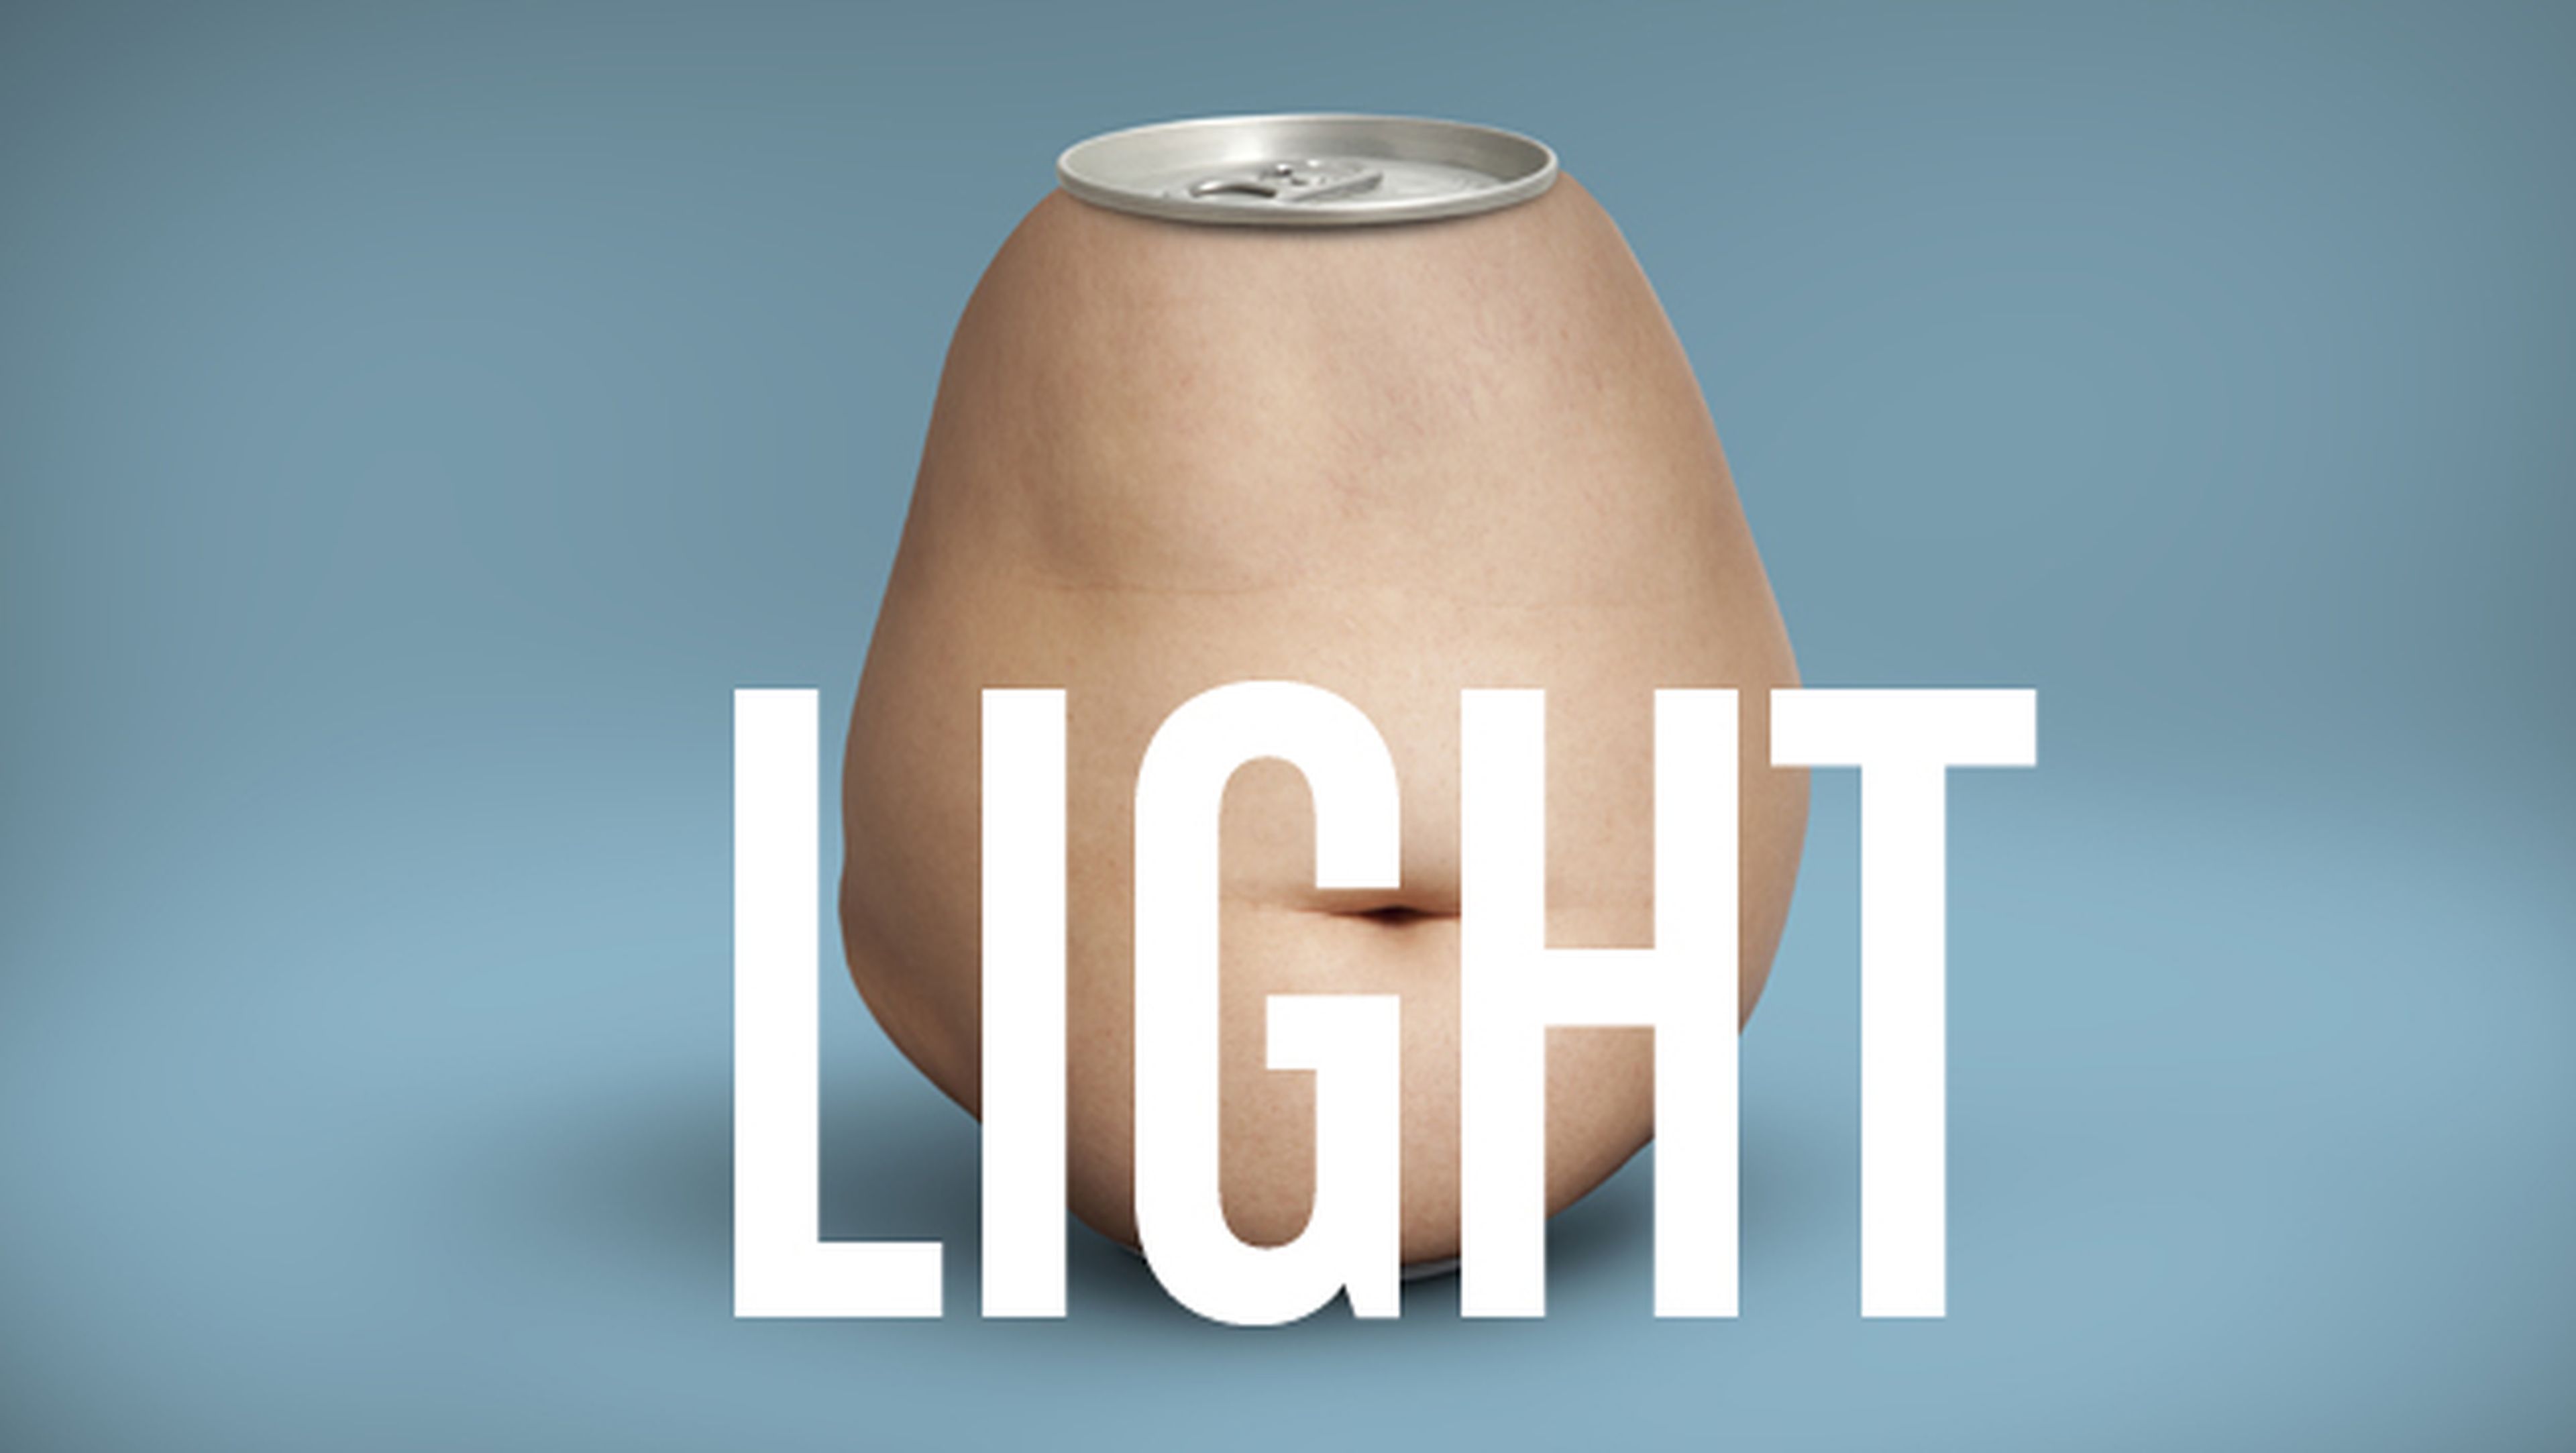 Los refrescos gaseosos "light" aumentan obesidad abdominal